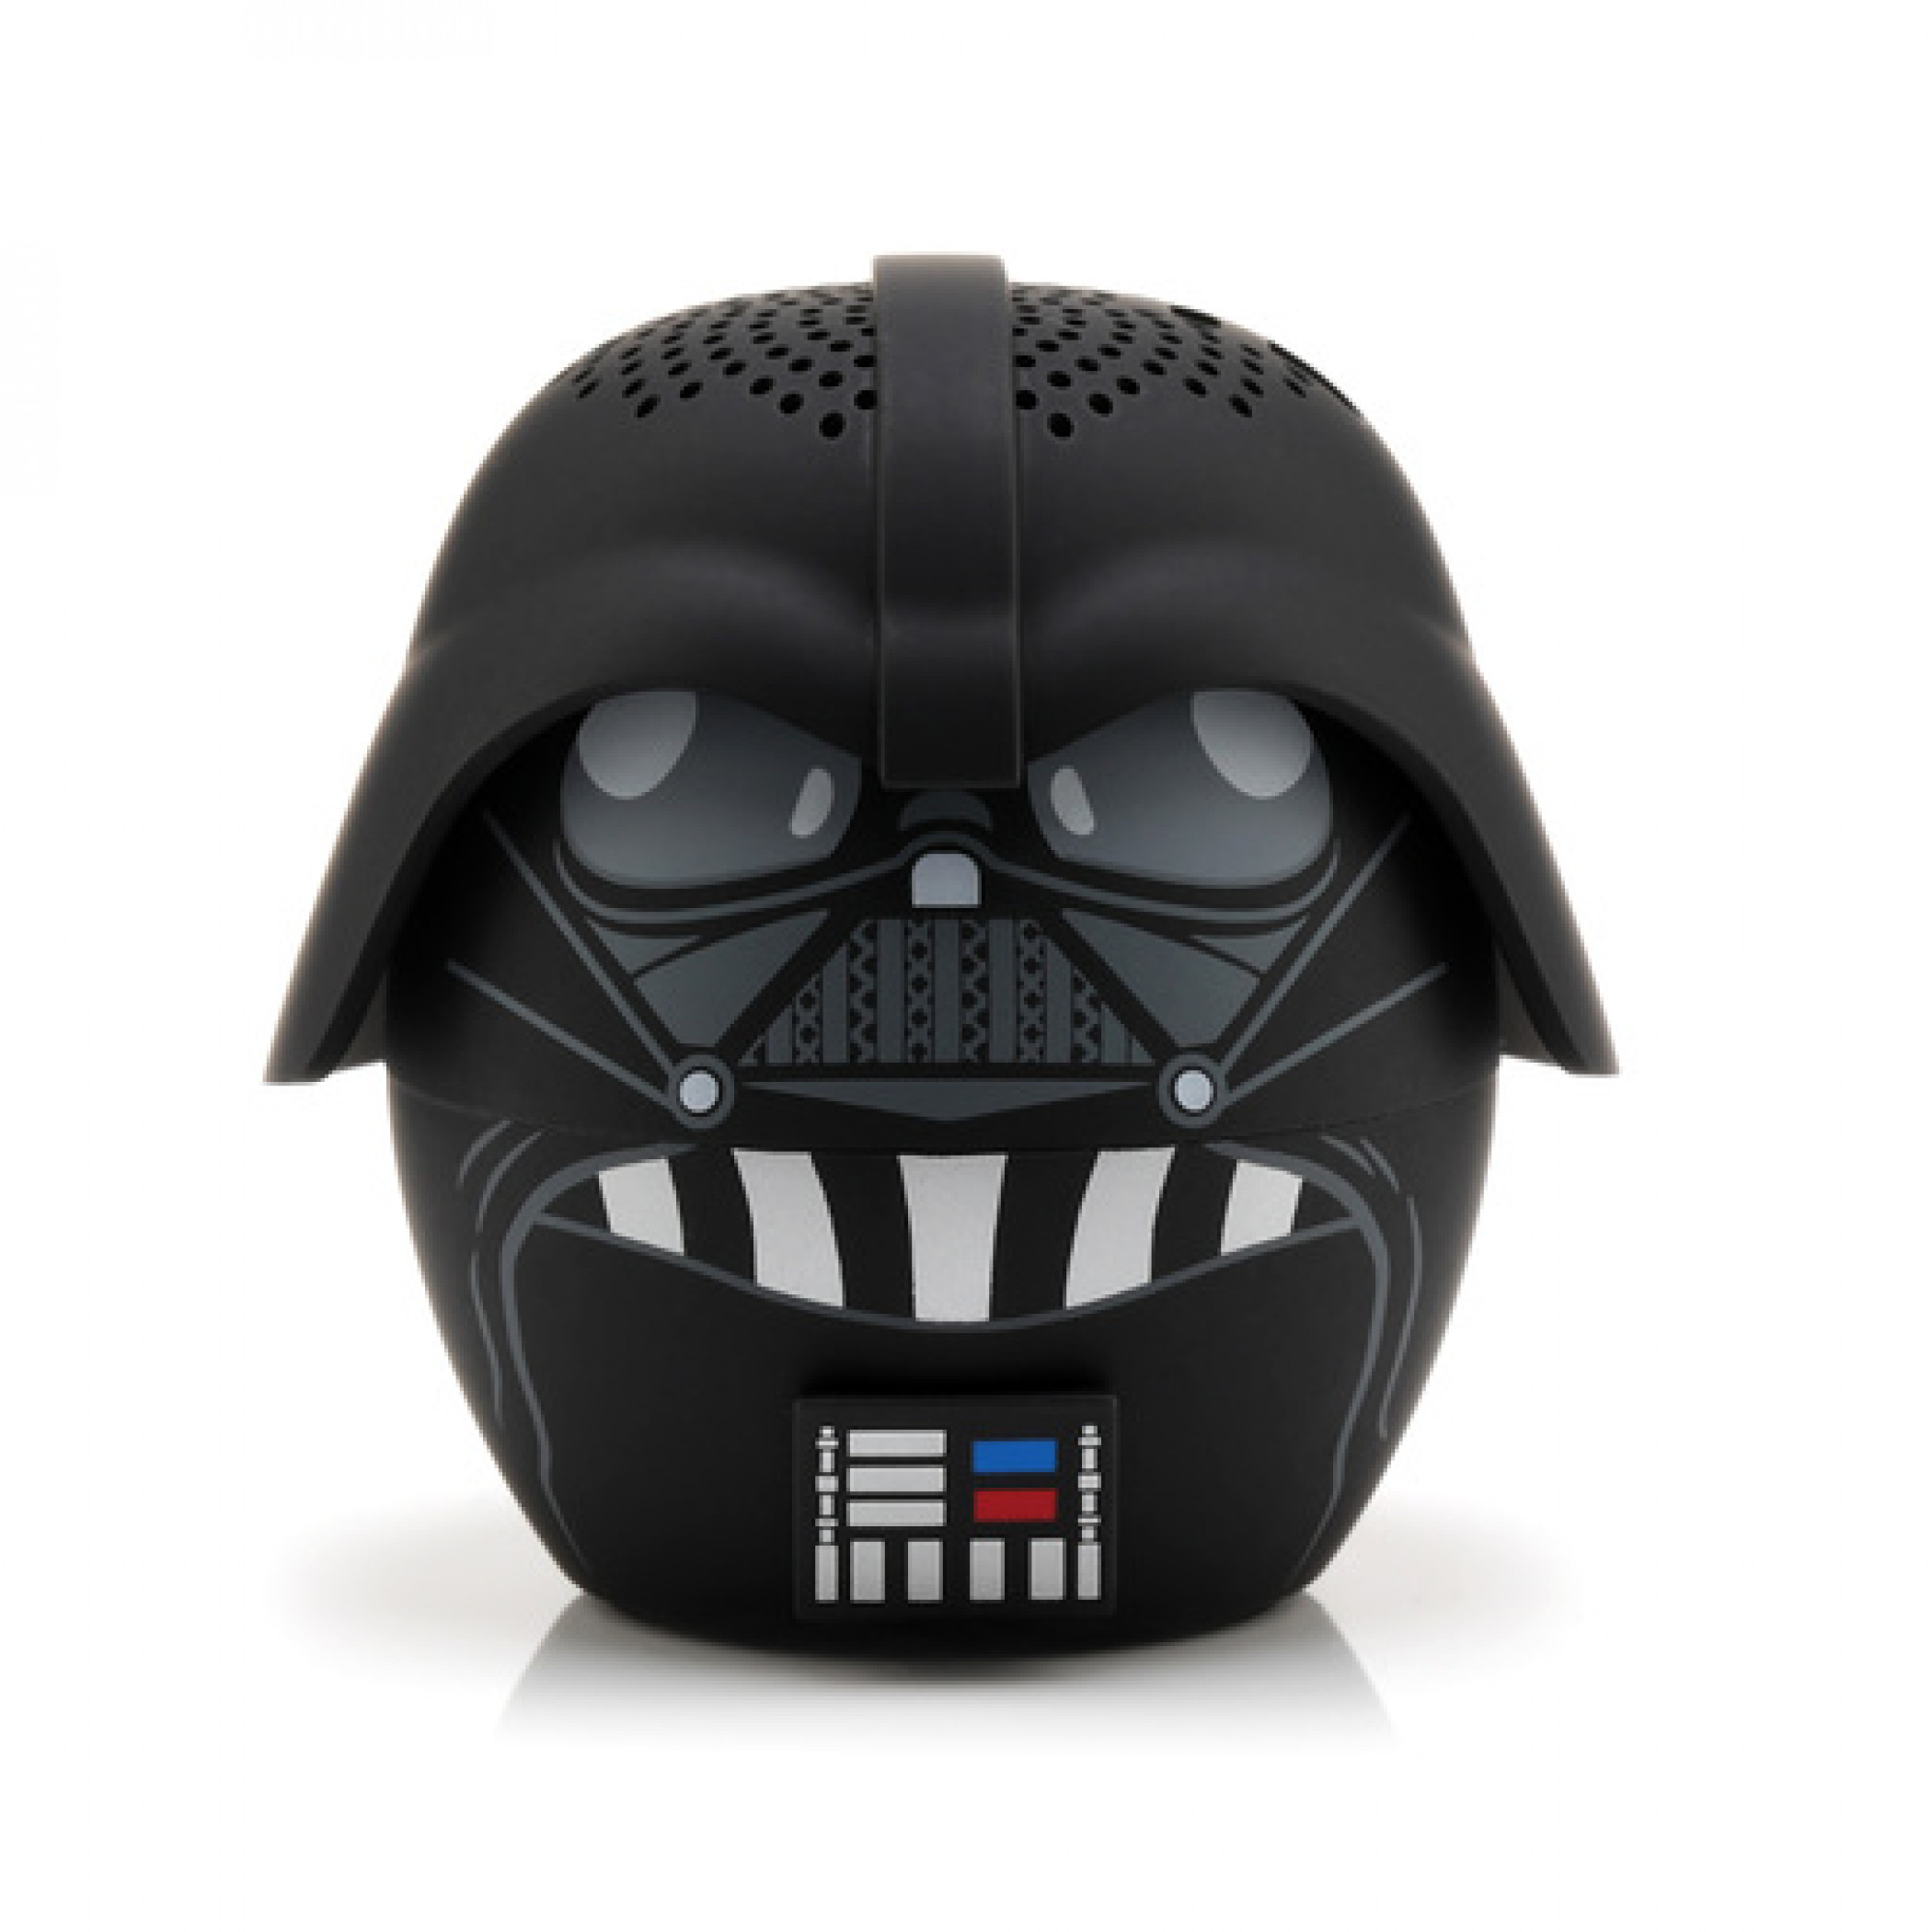 Star Wars Darth Vader Bitty Boomers Bluetooth Speaker